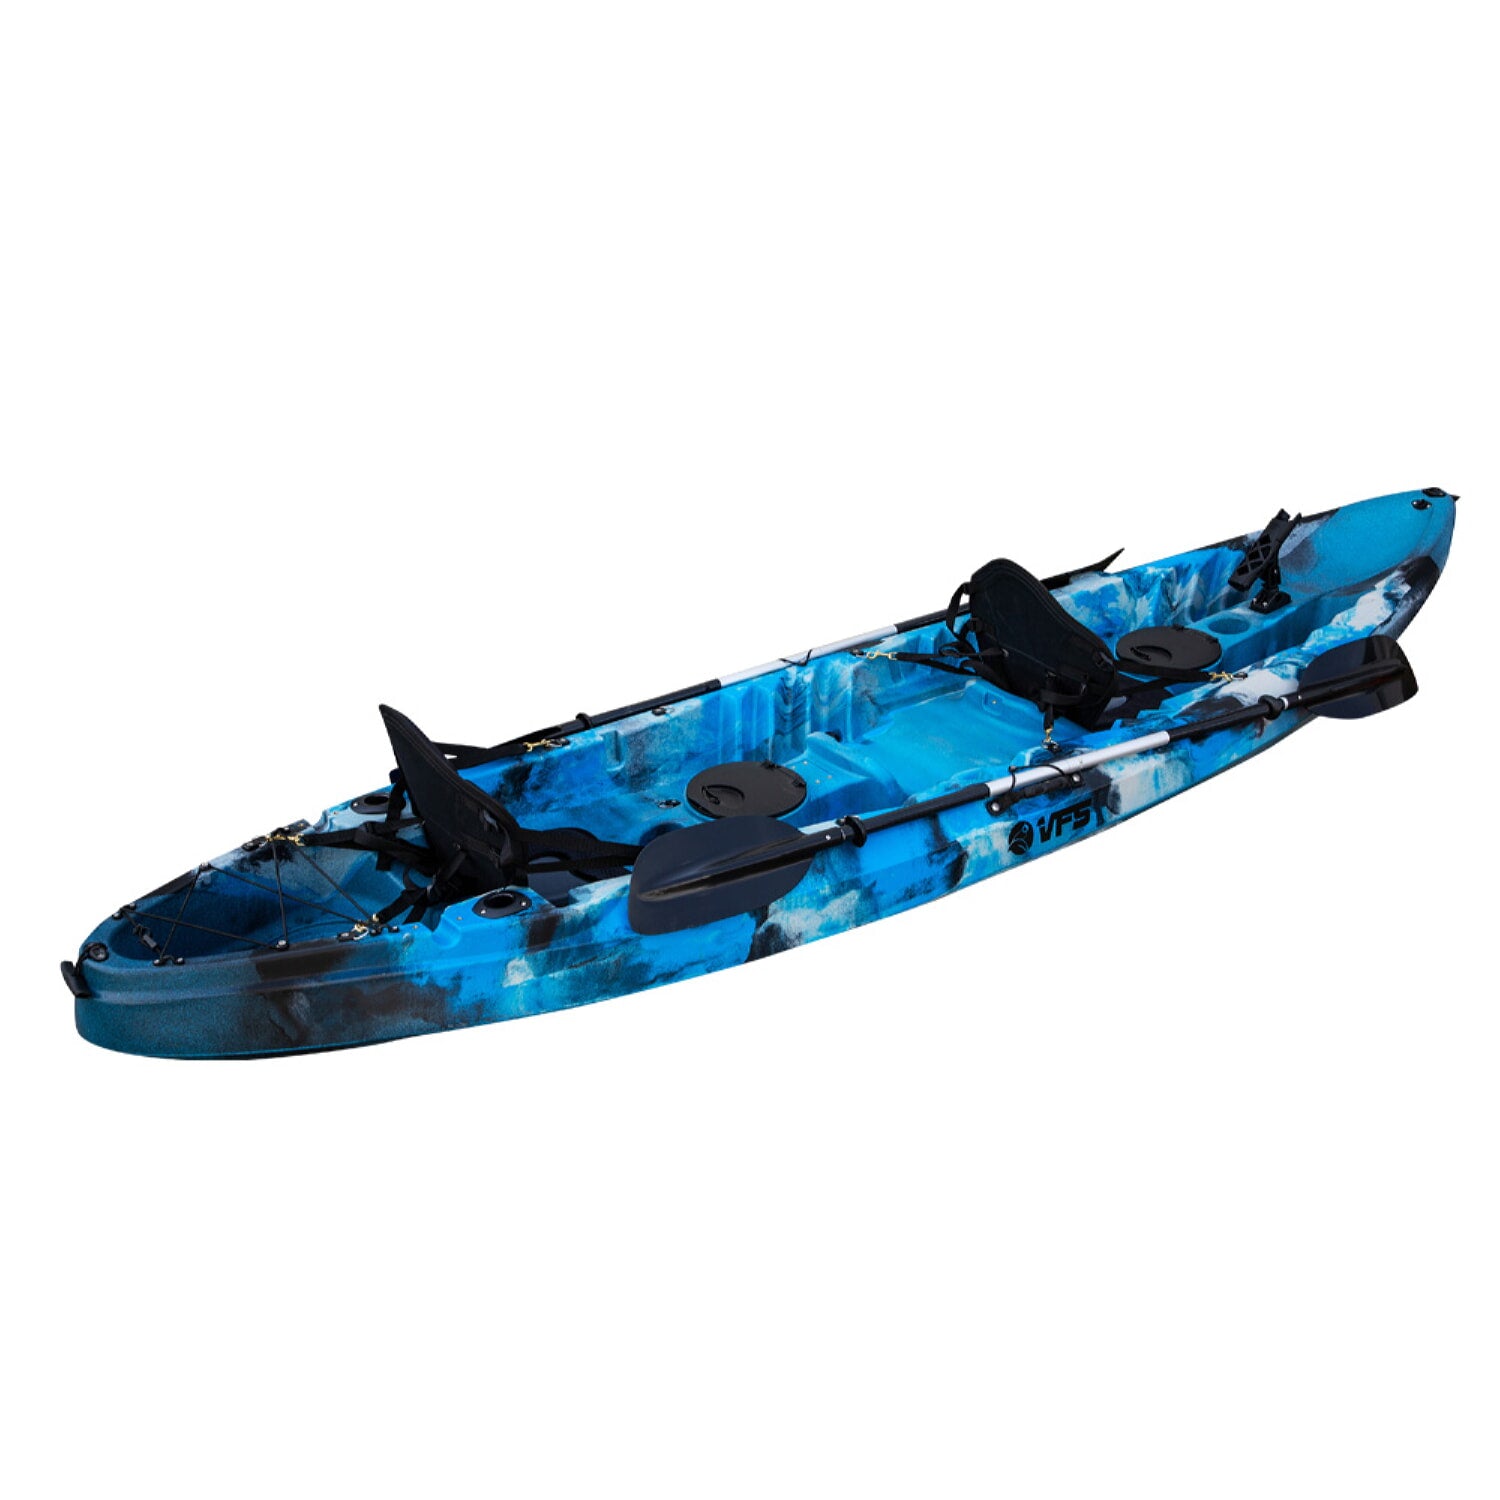 Kayak Coiba (3700Mm) 12FT - Blue Gray Black